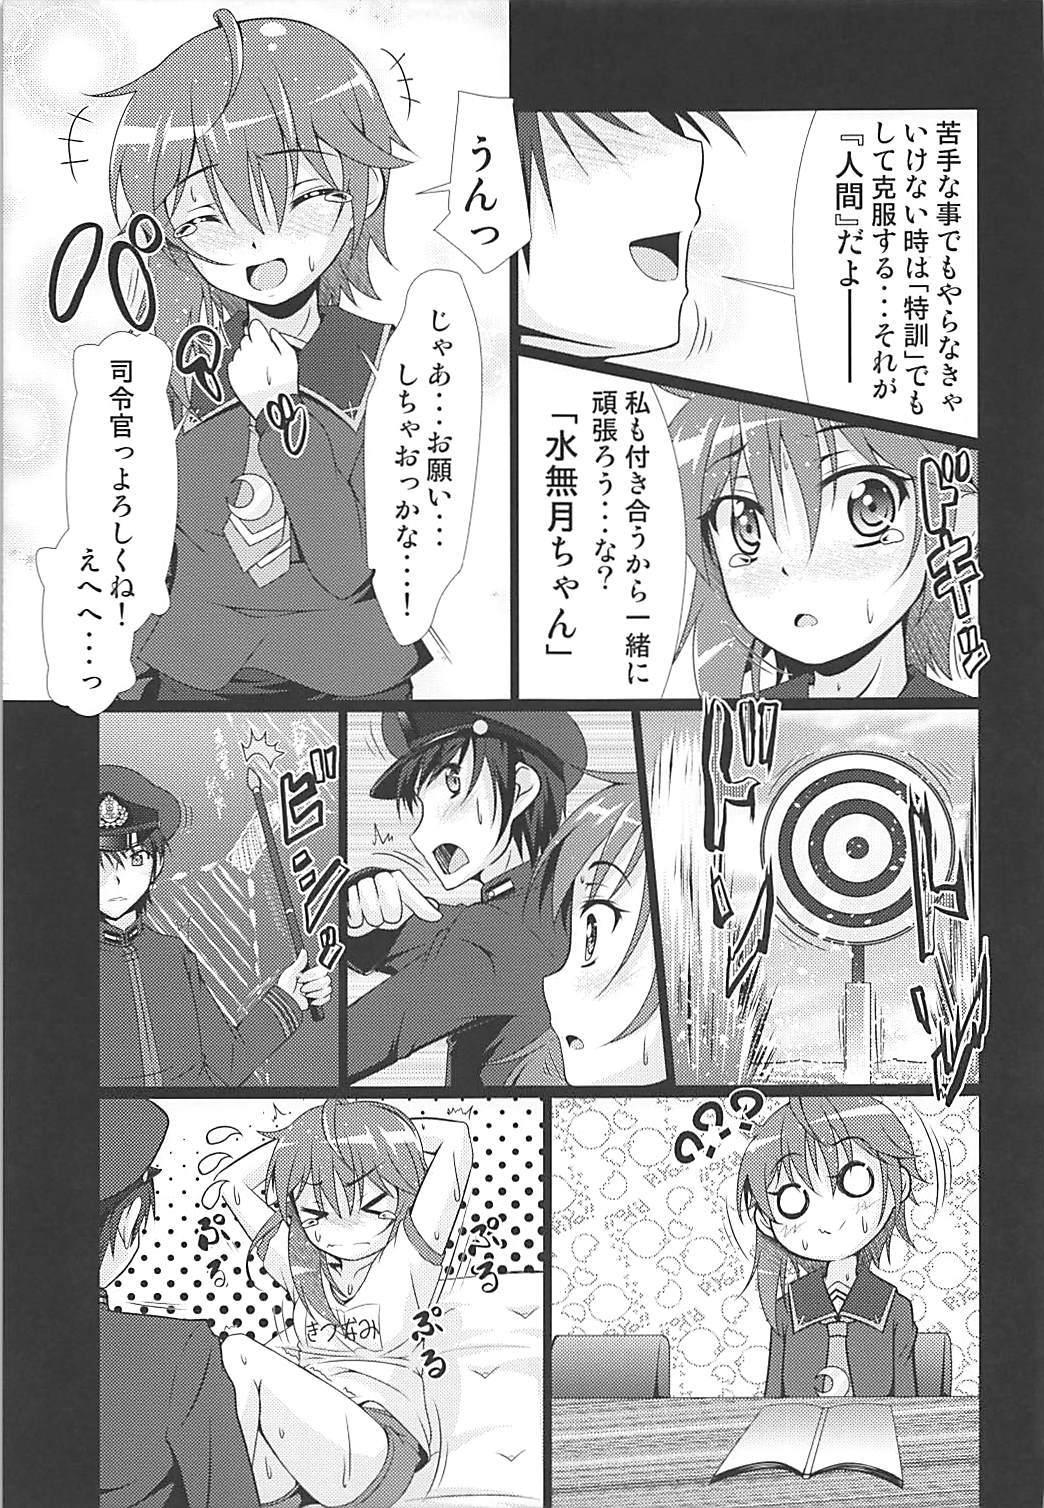 19yo 2+2=Minazuki/Nagatsuki #01 - Kantai collection Dotado - Page 12